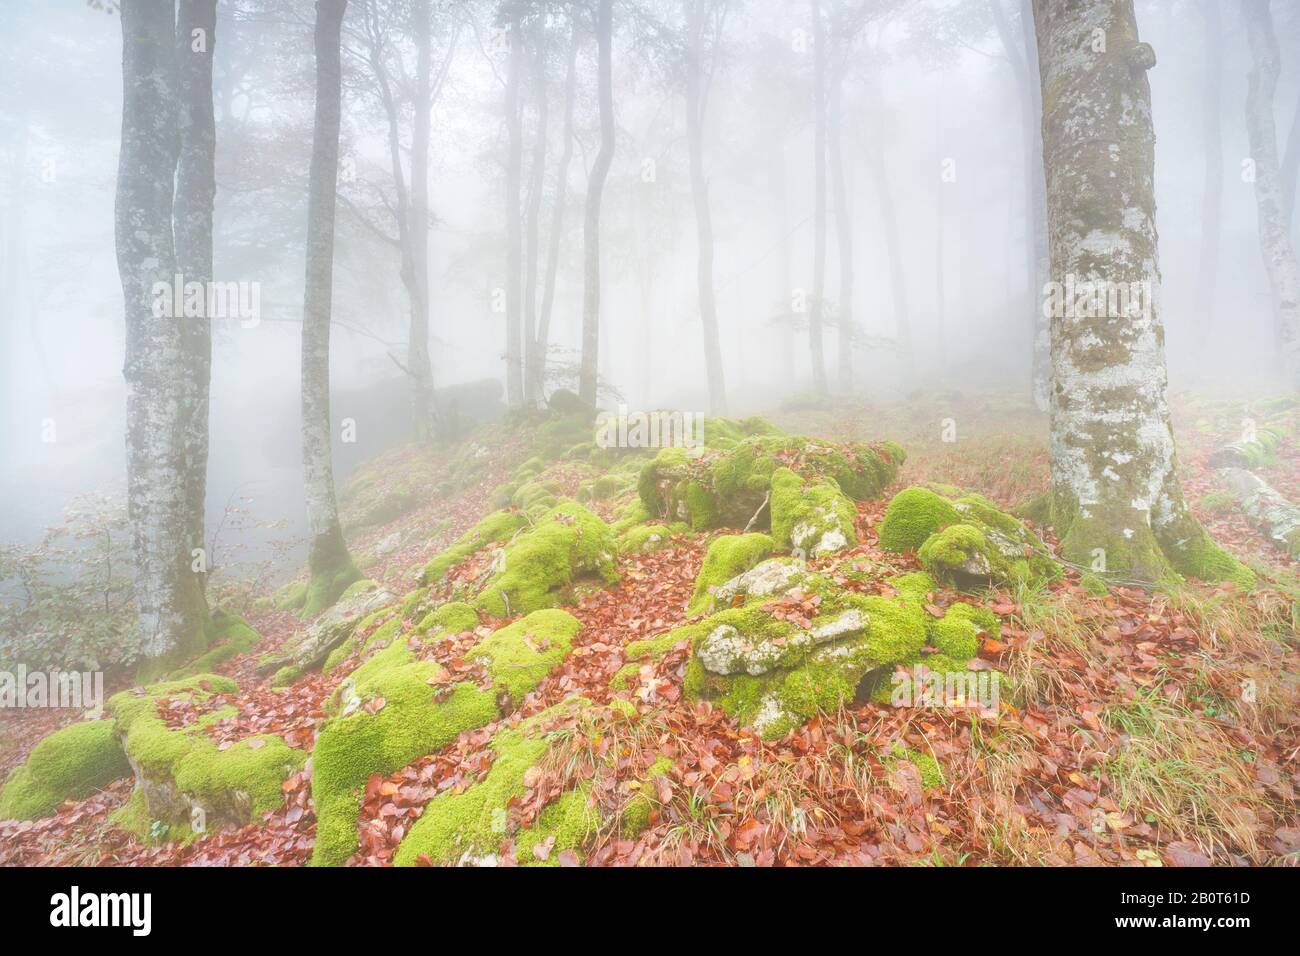 20 Ottobre 2018. Fotografia scattata nella Foresta incantata del Parco Naturale di Urbasa e Andia (Navarra). Foto Stock